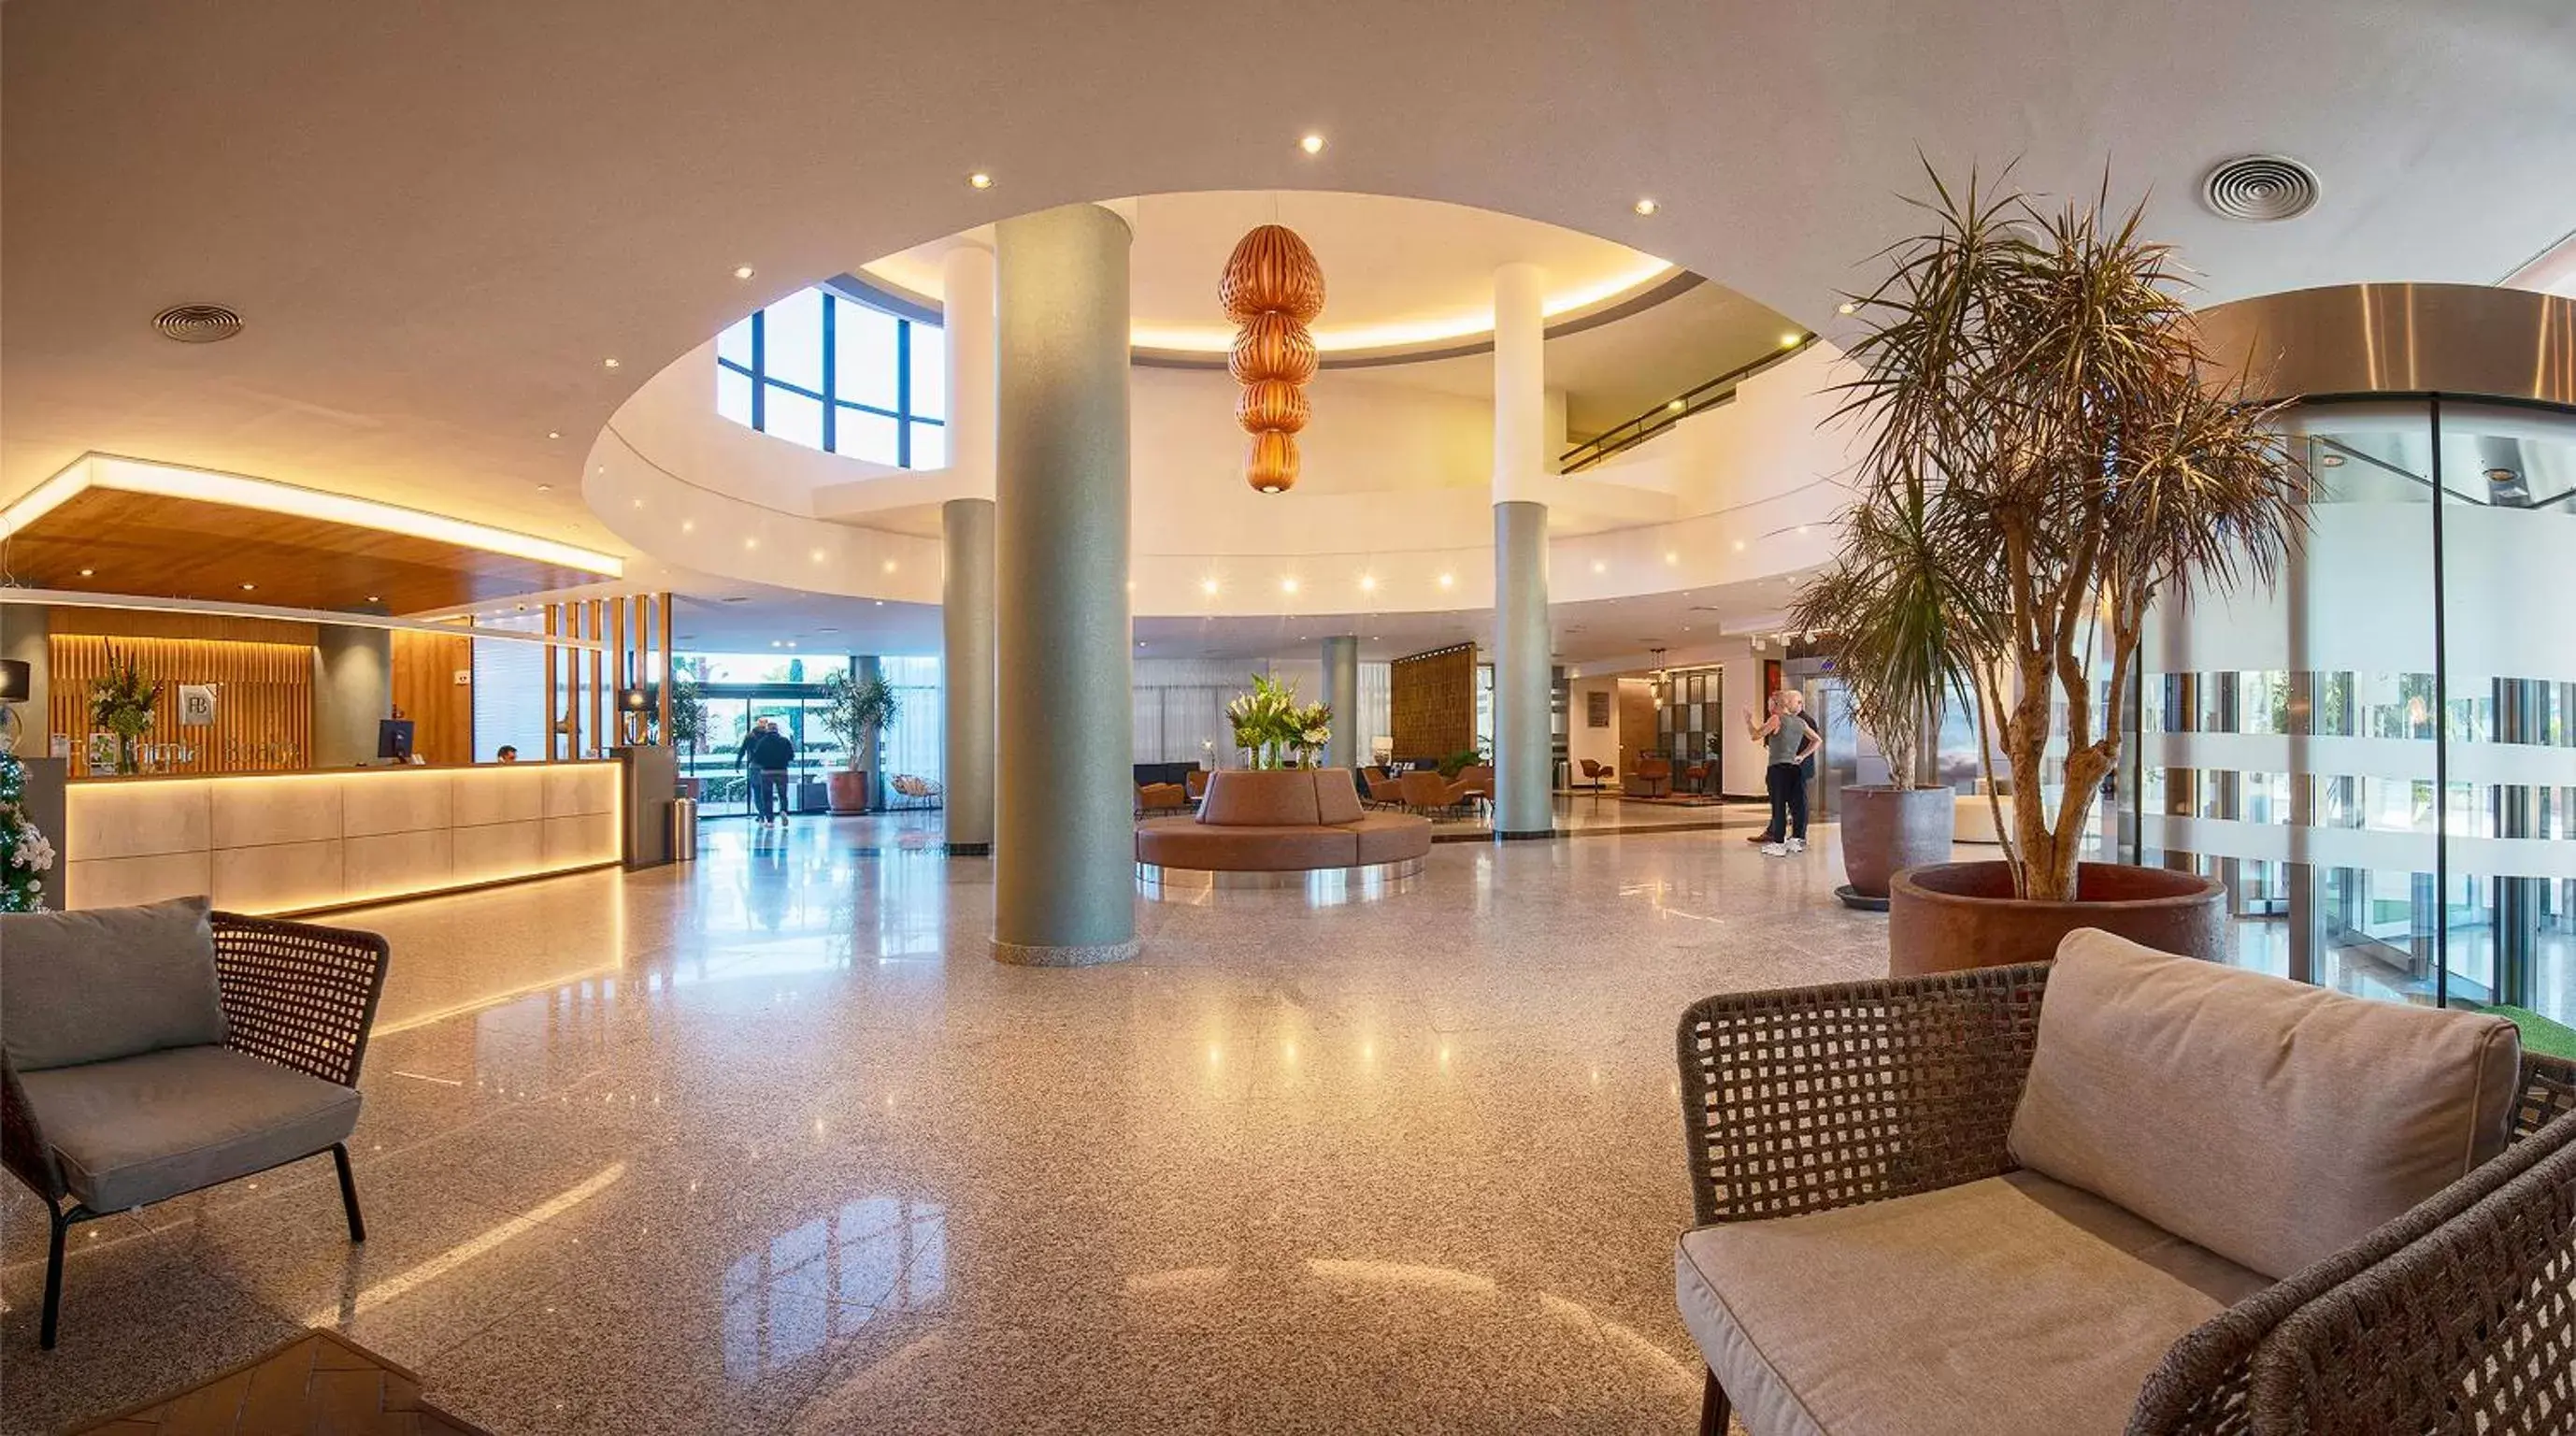 Lobby or reception, Lobby/Reception in Fuengirola Beach Apartamentos Turísticos